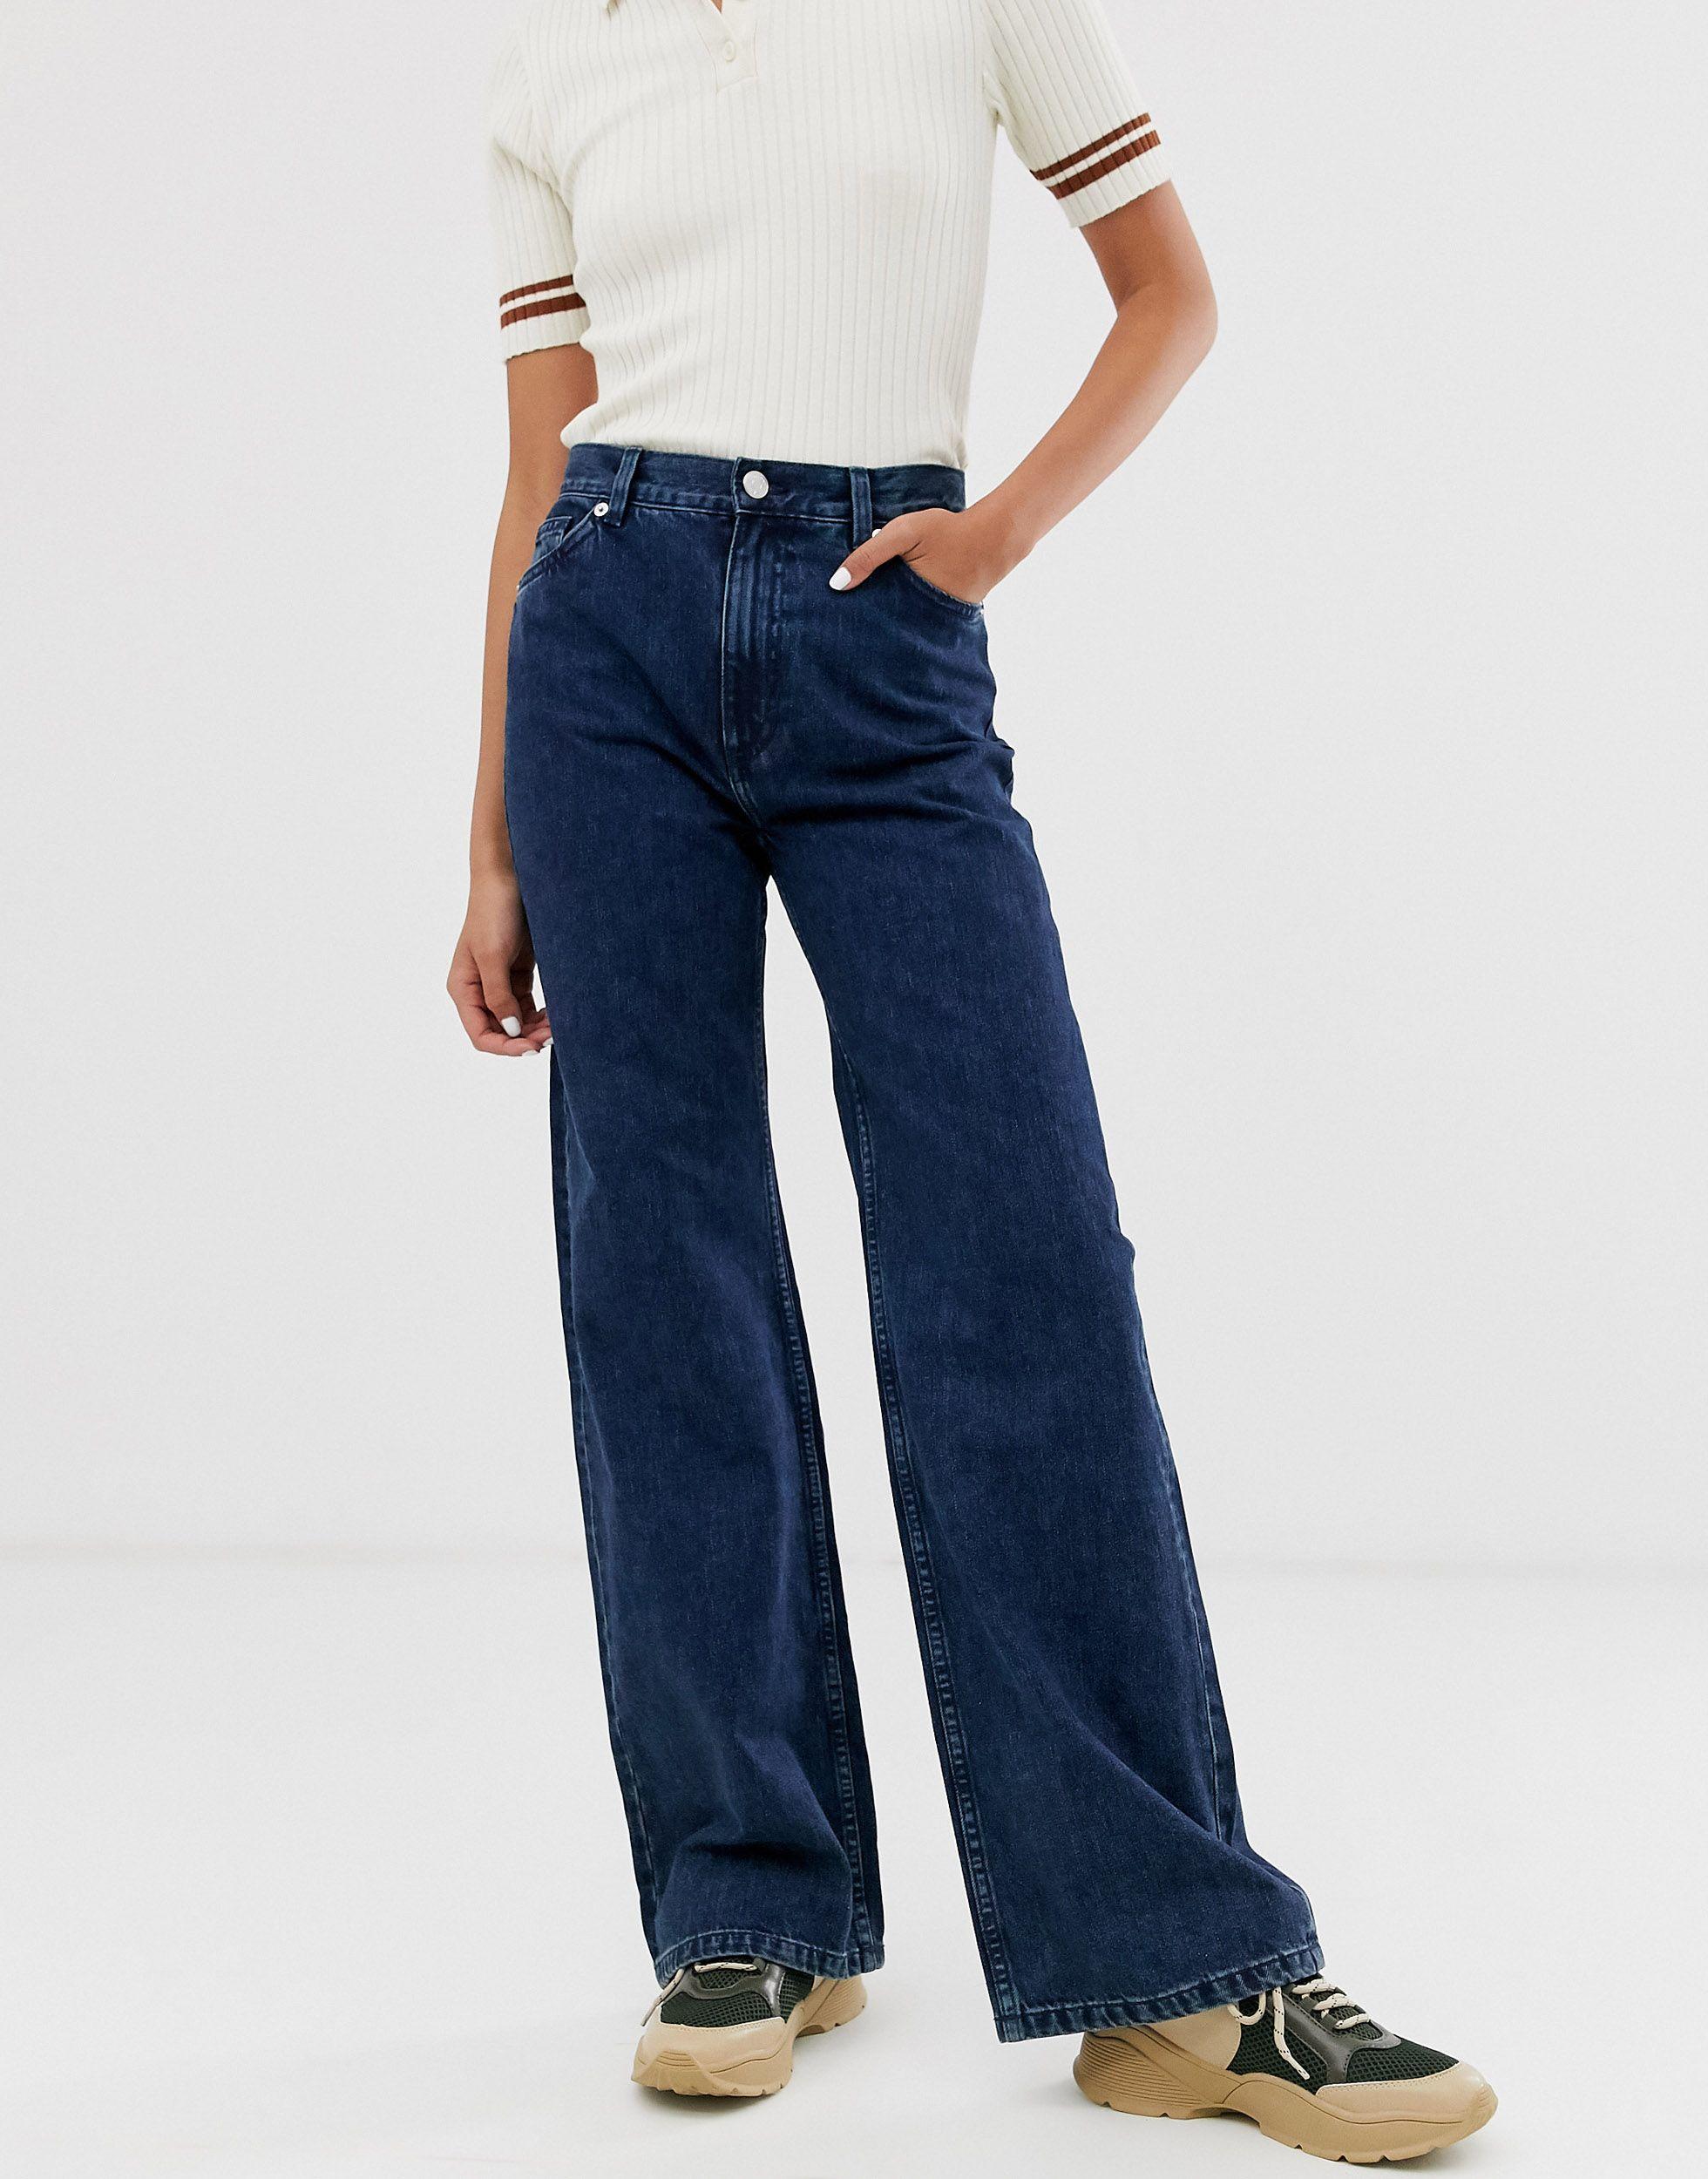 Monki Yoko Wide Jeans in | Lyst